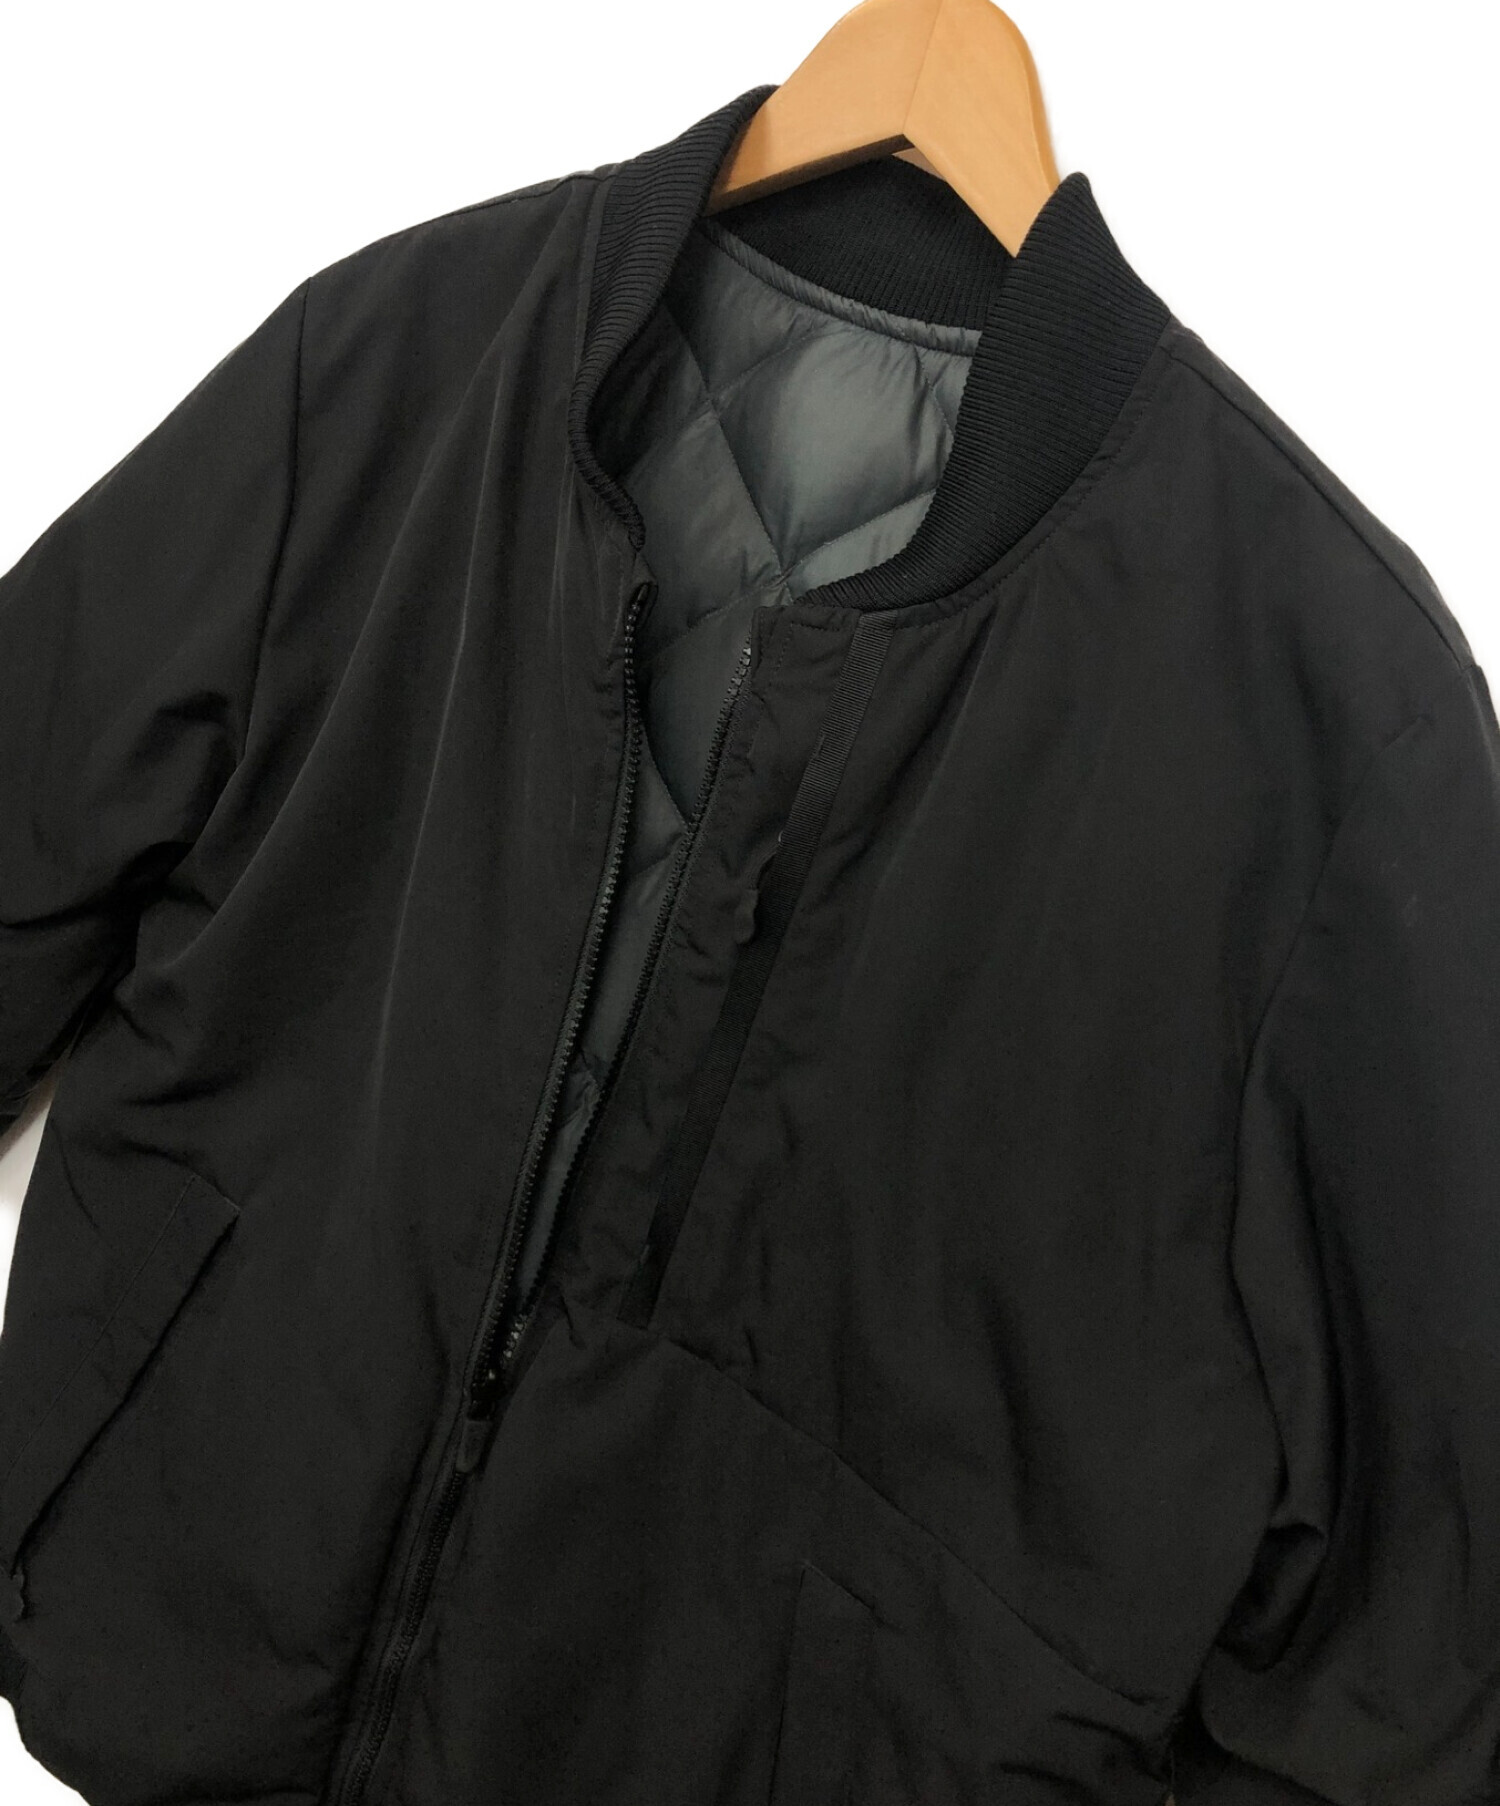 NIKE (ナイキ) リバーシブルダウンジャケット ブラック サイズ:L